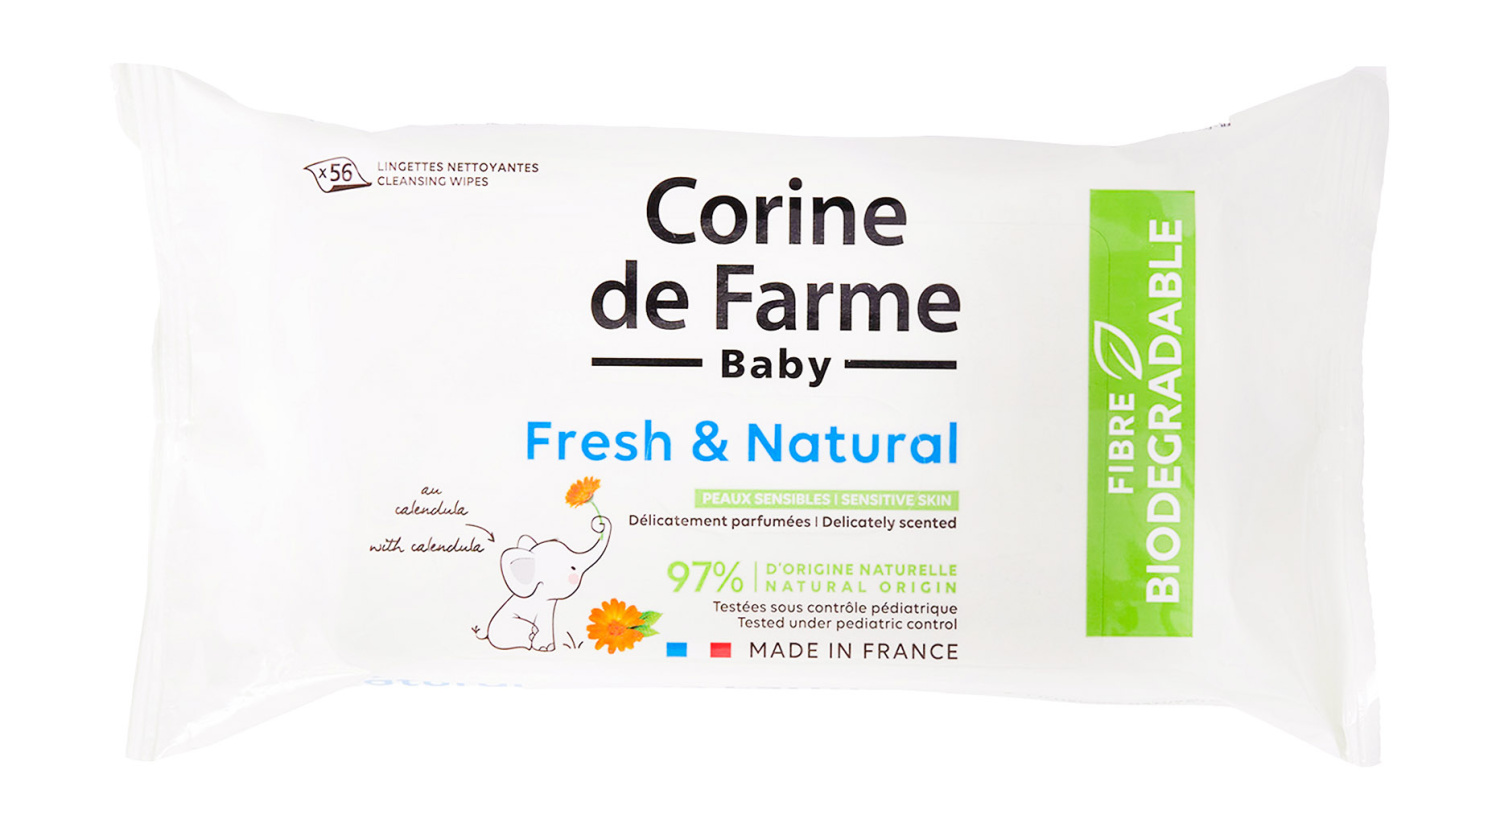 Corine de Farme Cleansing Wipes Fresh & Natural 56p - интернет-магазин профессиональной косметики Spadream, изображение 53466